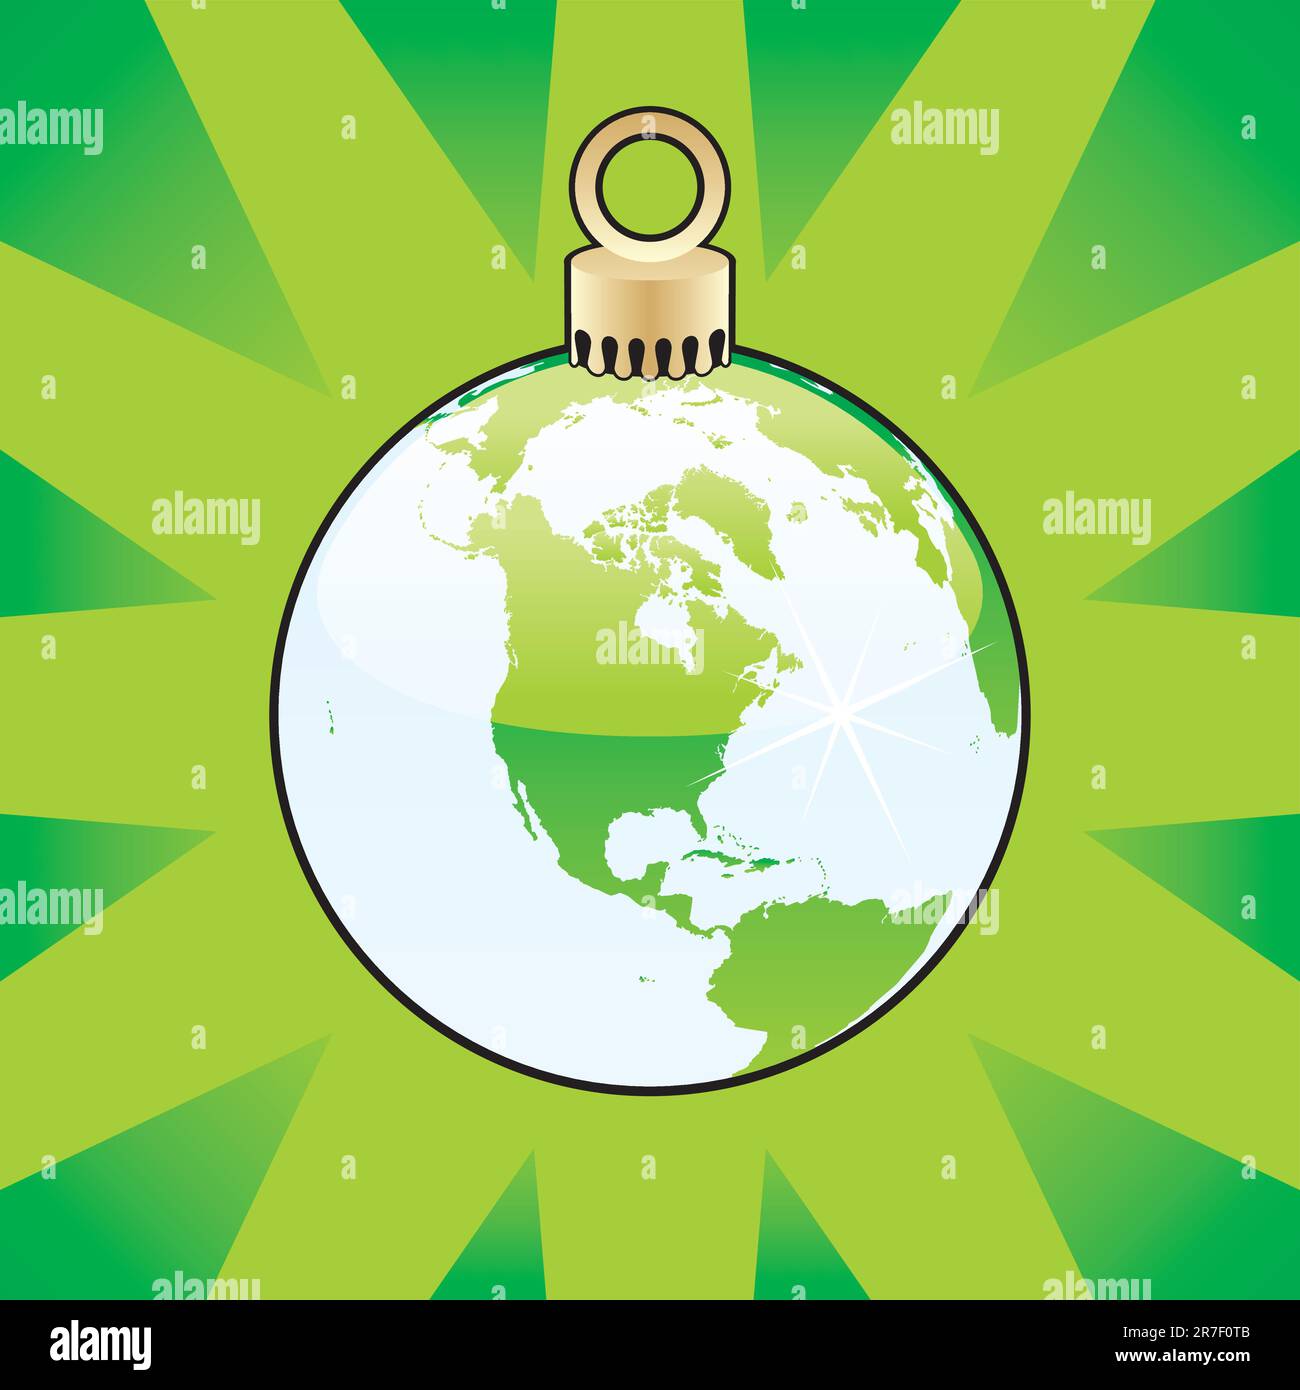 bombilla de navidad de color totalmente editable con diseño de globo mundial Ilustración del Vector